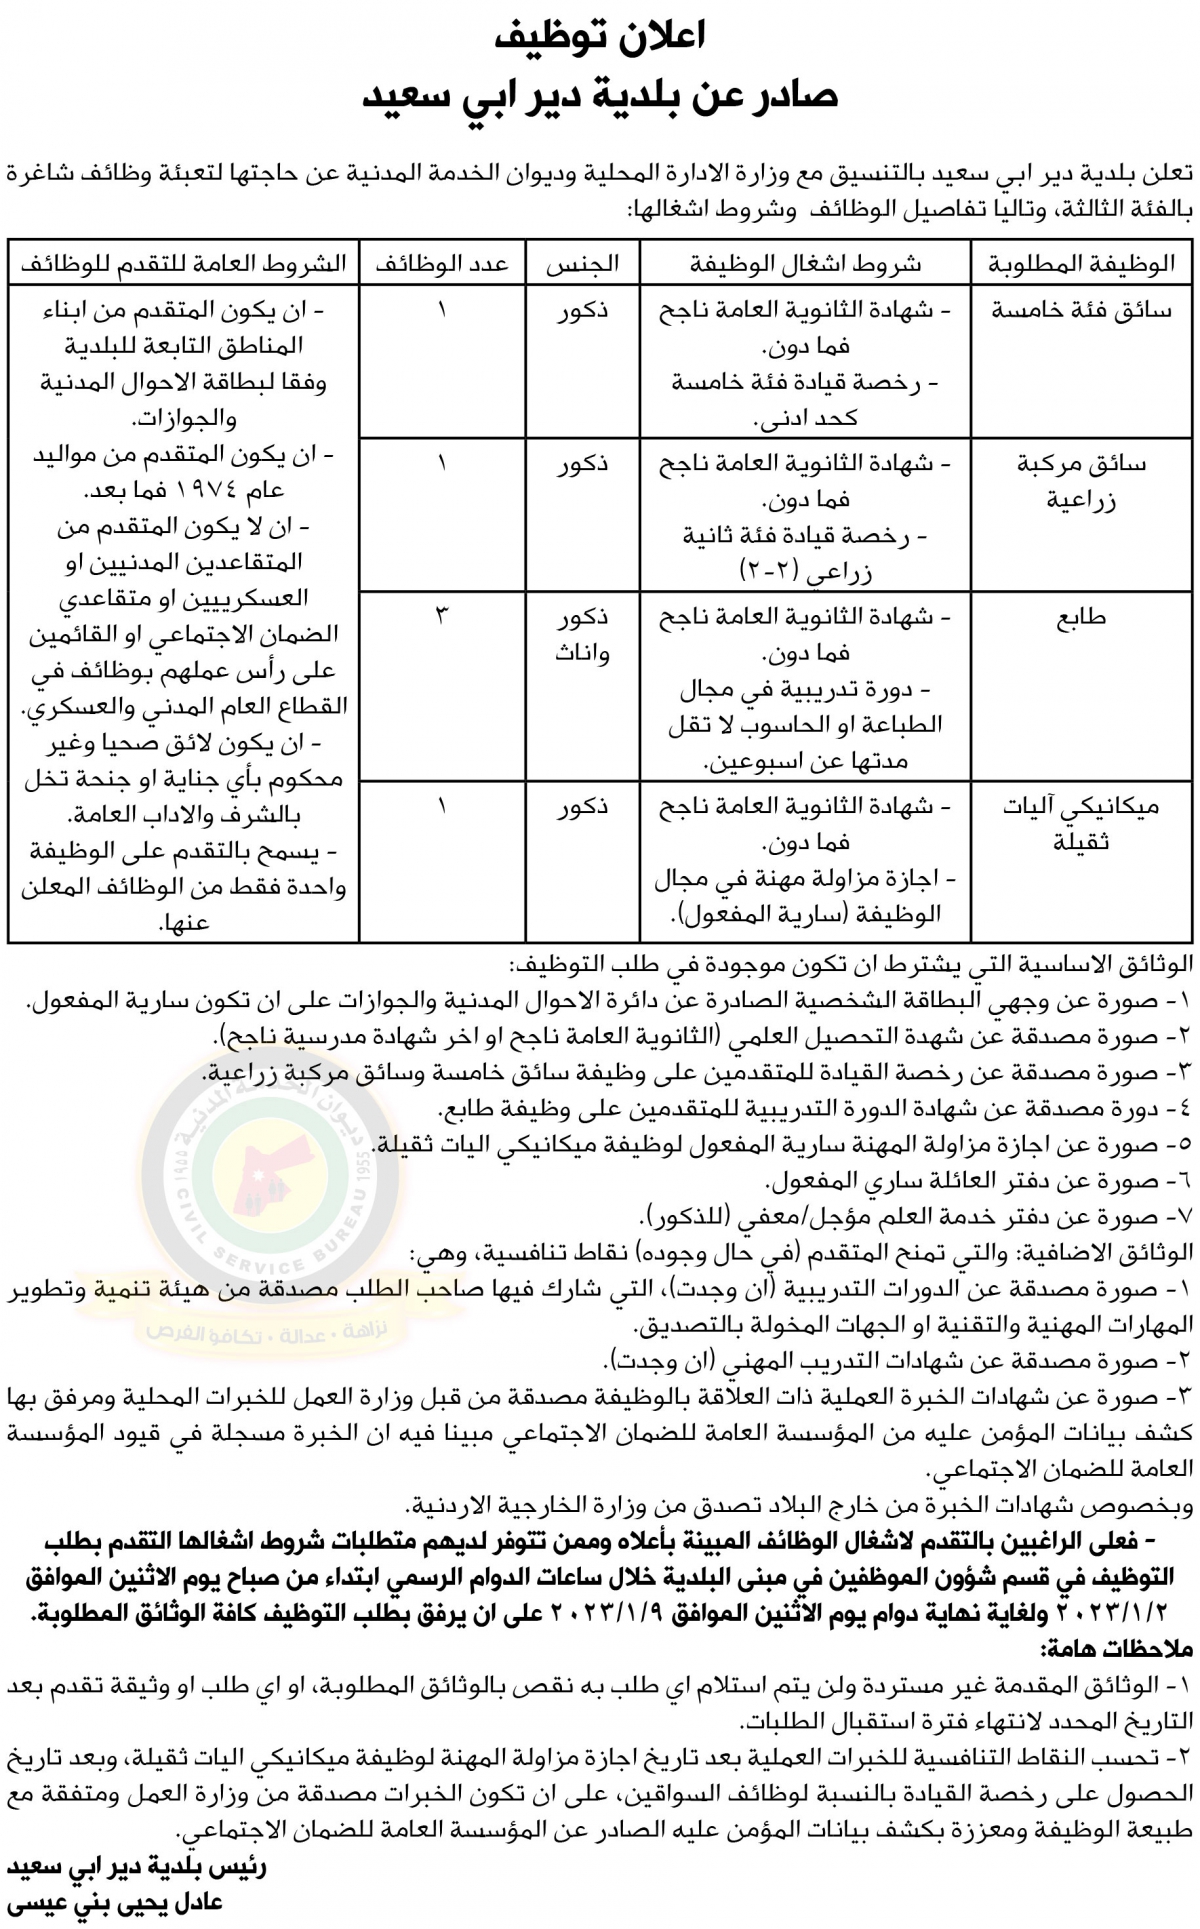 اعلان وظائف شاغرة بالفئة الثالثة صادر عن بلدية دير ابي سعيد